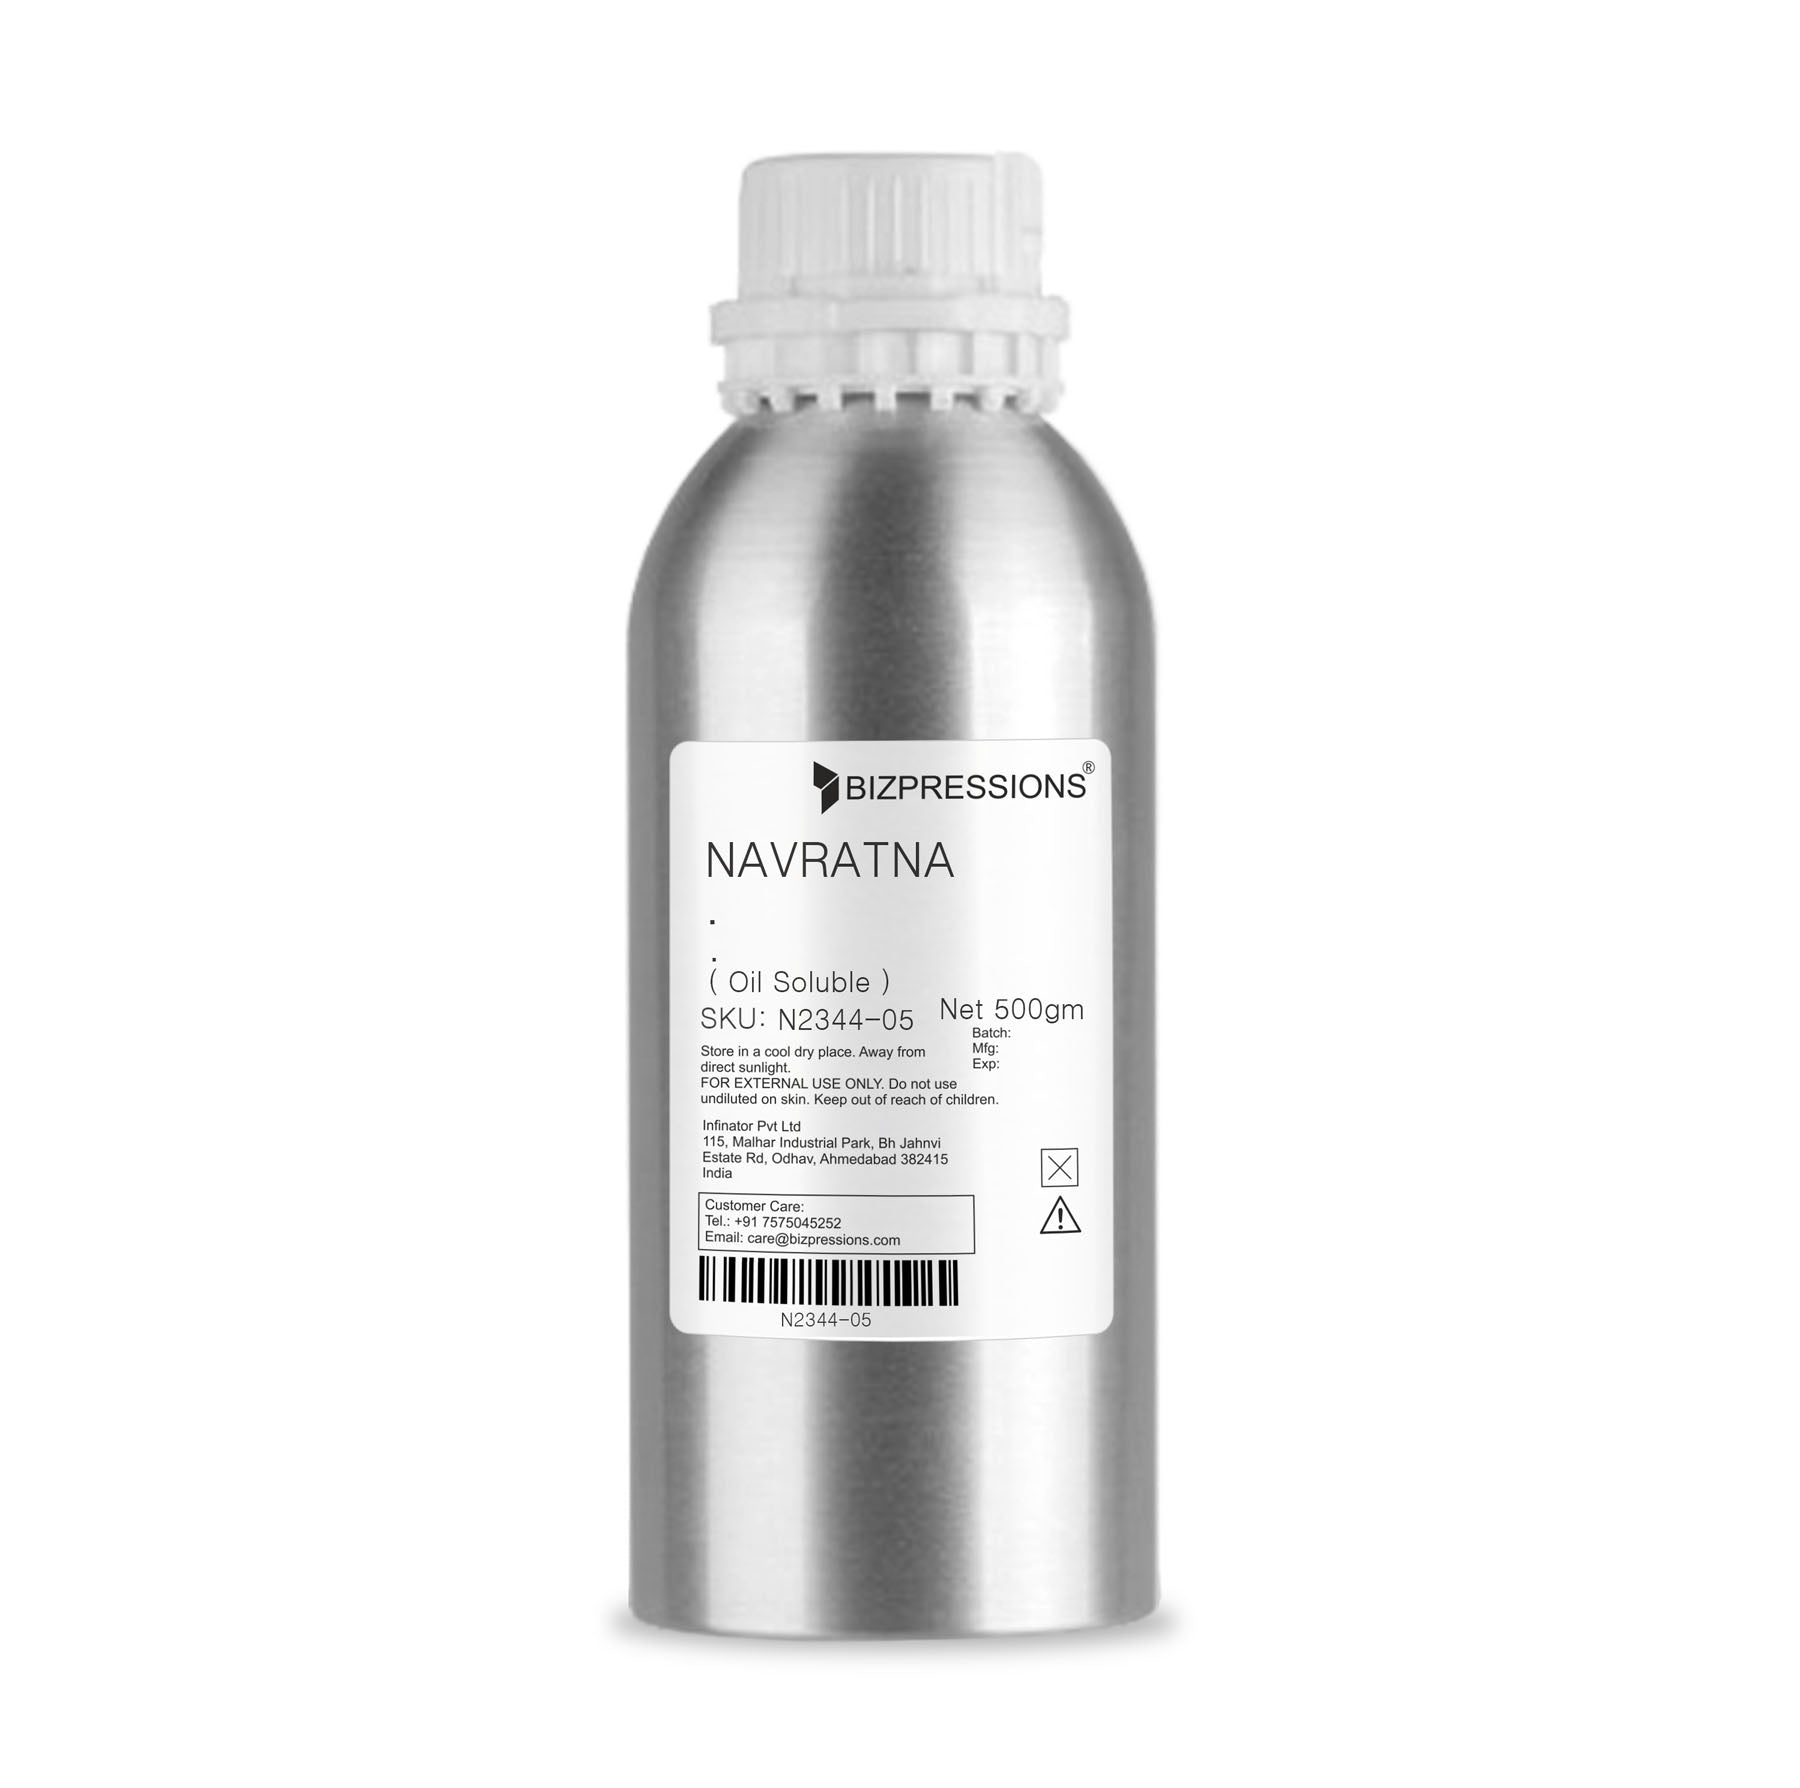 NAVRATNA - Fragrance ( Oil Soluble ) - 500 gm